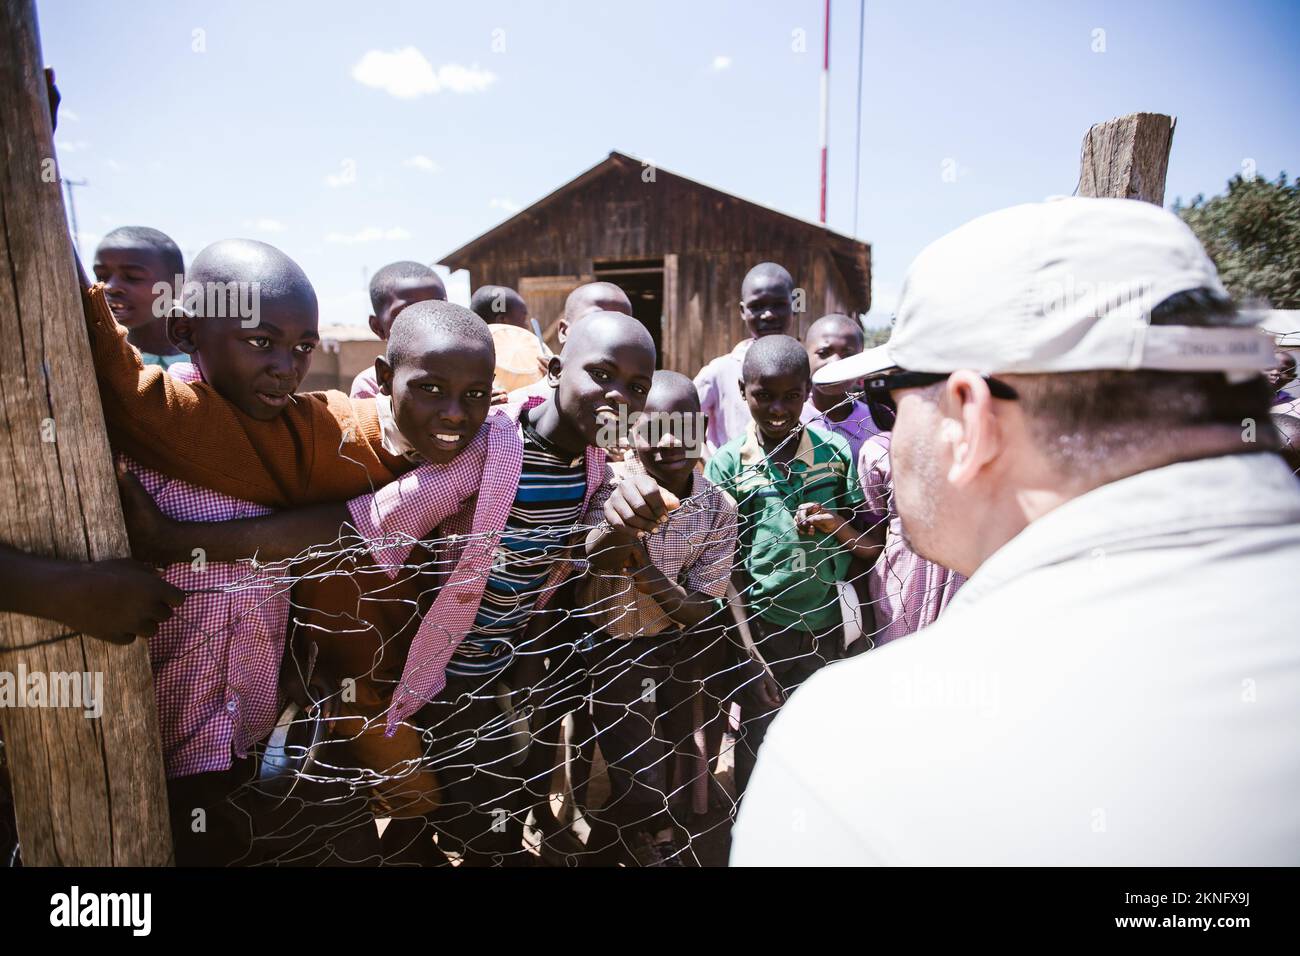 Mount Elgon, Kenia - 01.25.2017: Kinder aus armen Familien lächeln in zerrissener Kleidung. Ein Missionarsteam kam, um Obdachlosen zu helfen. Stockfoto